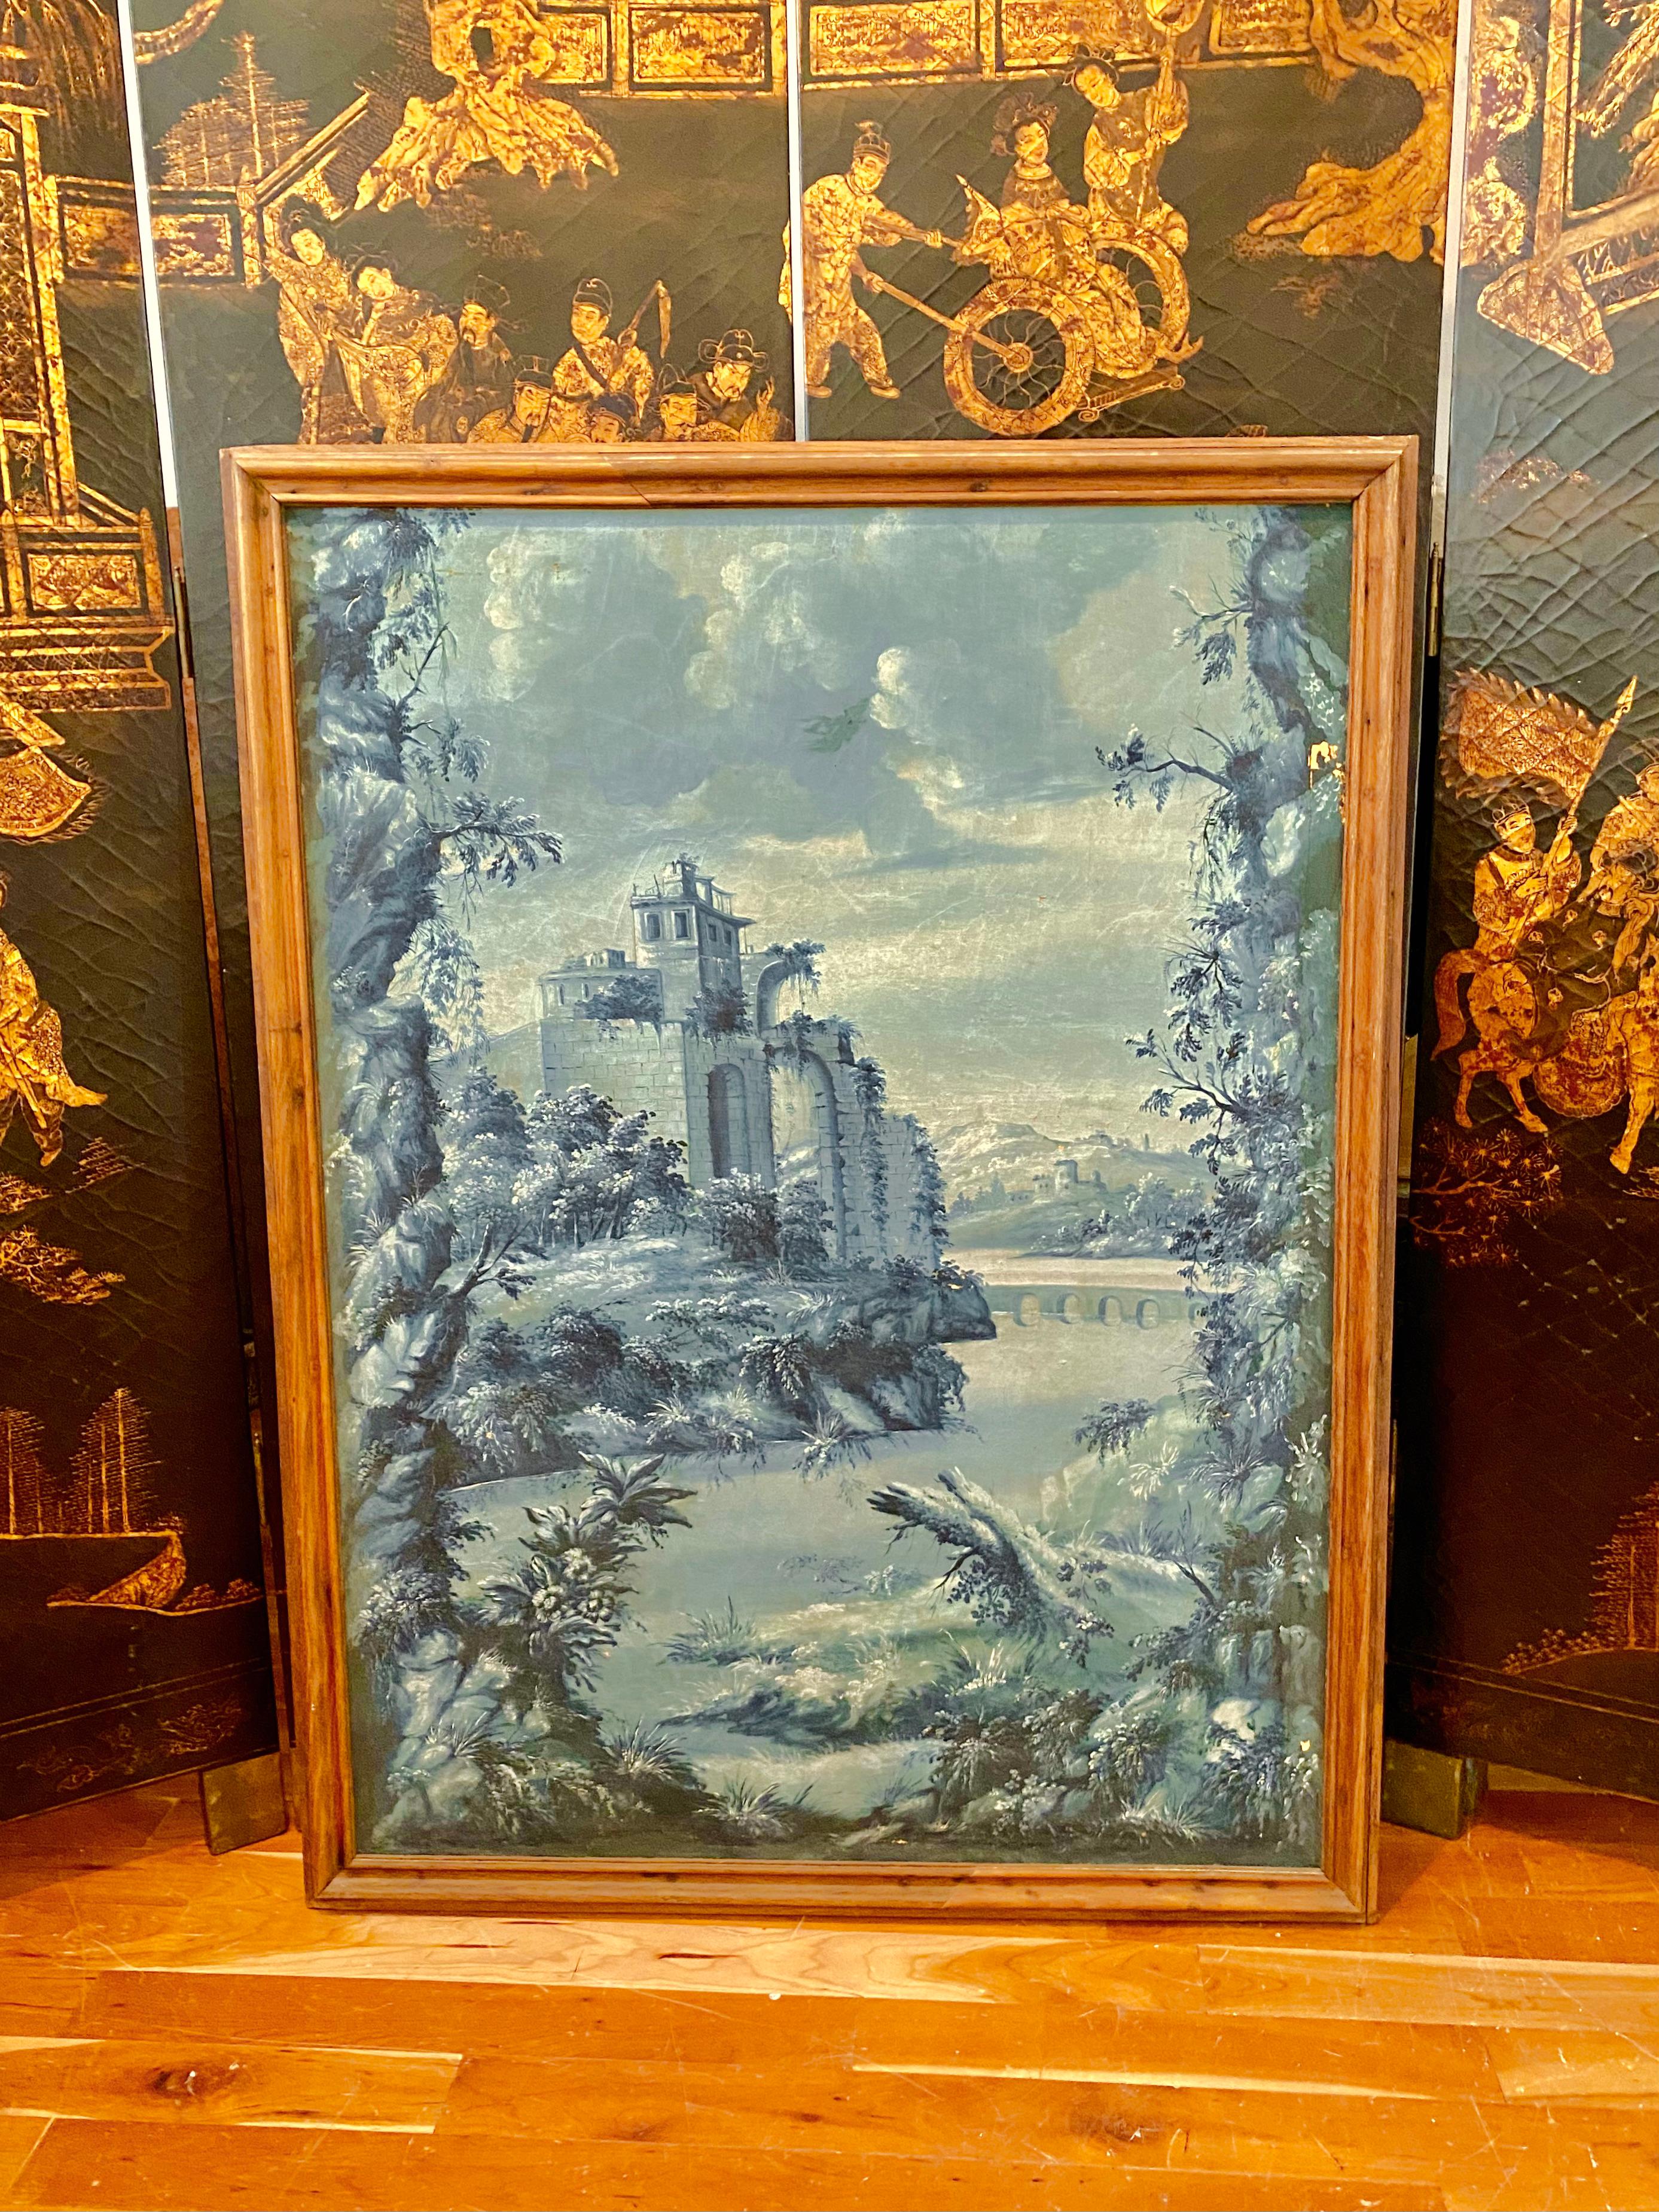 Großes französisches Camaïeu Bleu Grisaille-Gemälde. Die Farbe wird in einer monochromen Weise behandelt.
Tableau Grisaille-Gemälde in Blautönen von Camaïeu, das an eine Burgruine erinnert. Im Vordergrund ein von üppiger Vegetation umgebener Teich,